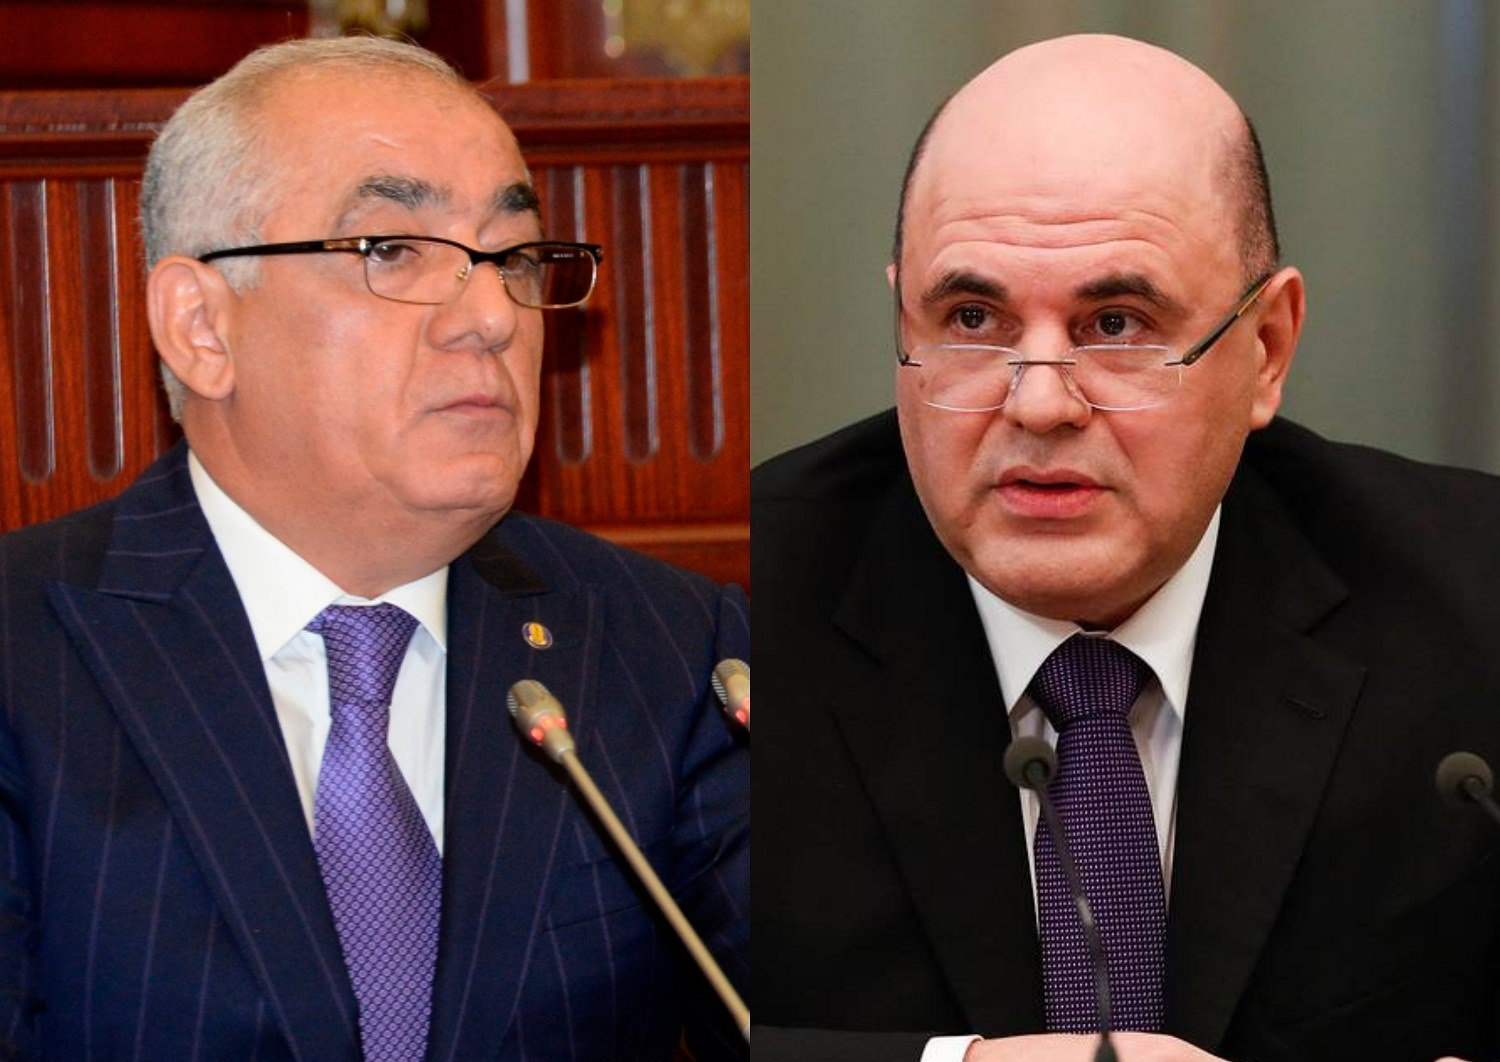 Состоялся телефонный разговор премьер-министра Азербайджана с российским коллегой